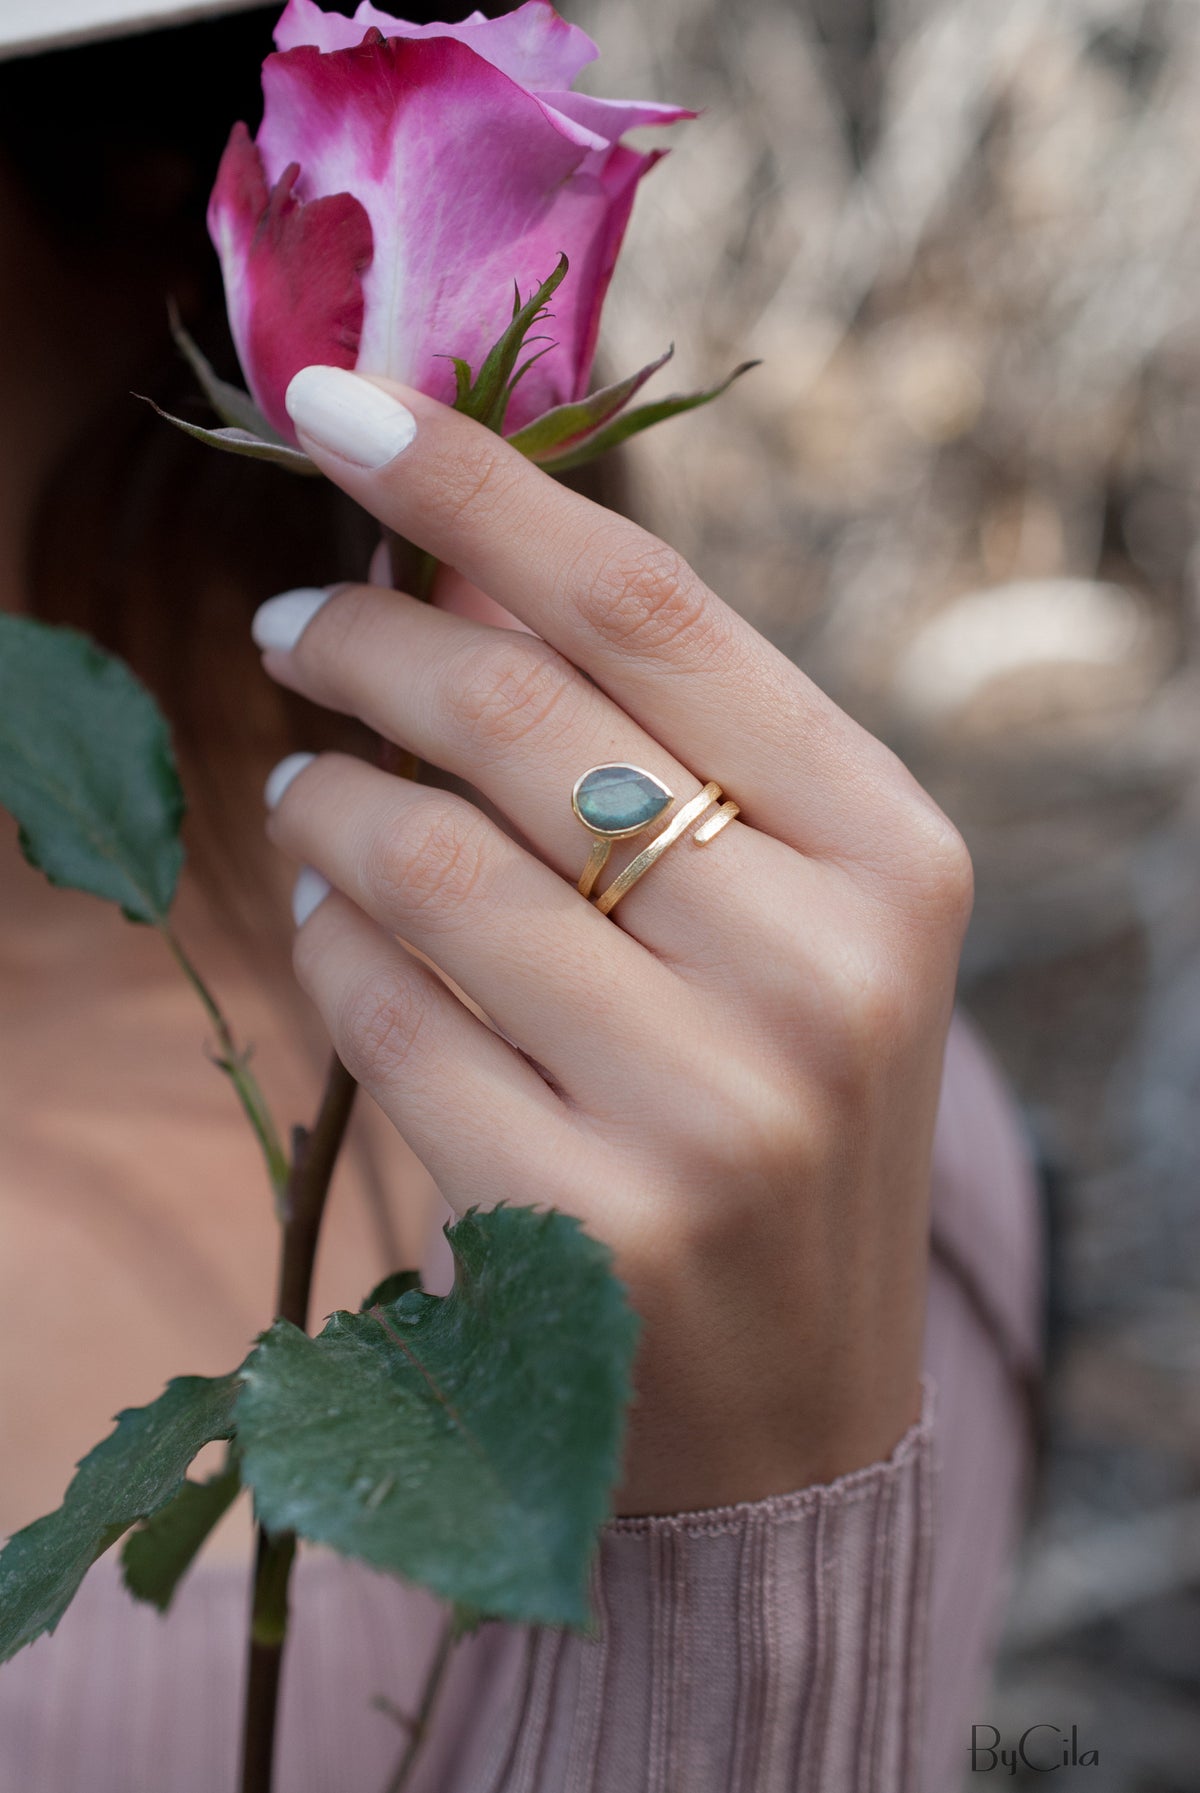 Labradorite Ring * 18k Gold Plated Ring * Statement Ring * Gemstone Ring * Bridal Ring * Wedding Ring * Organic Ring * Natural BJR106